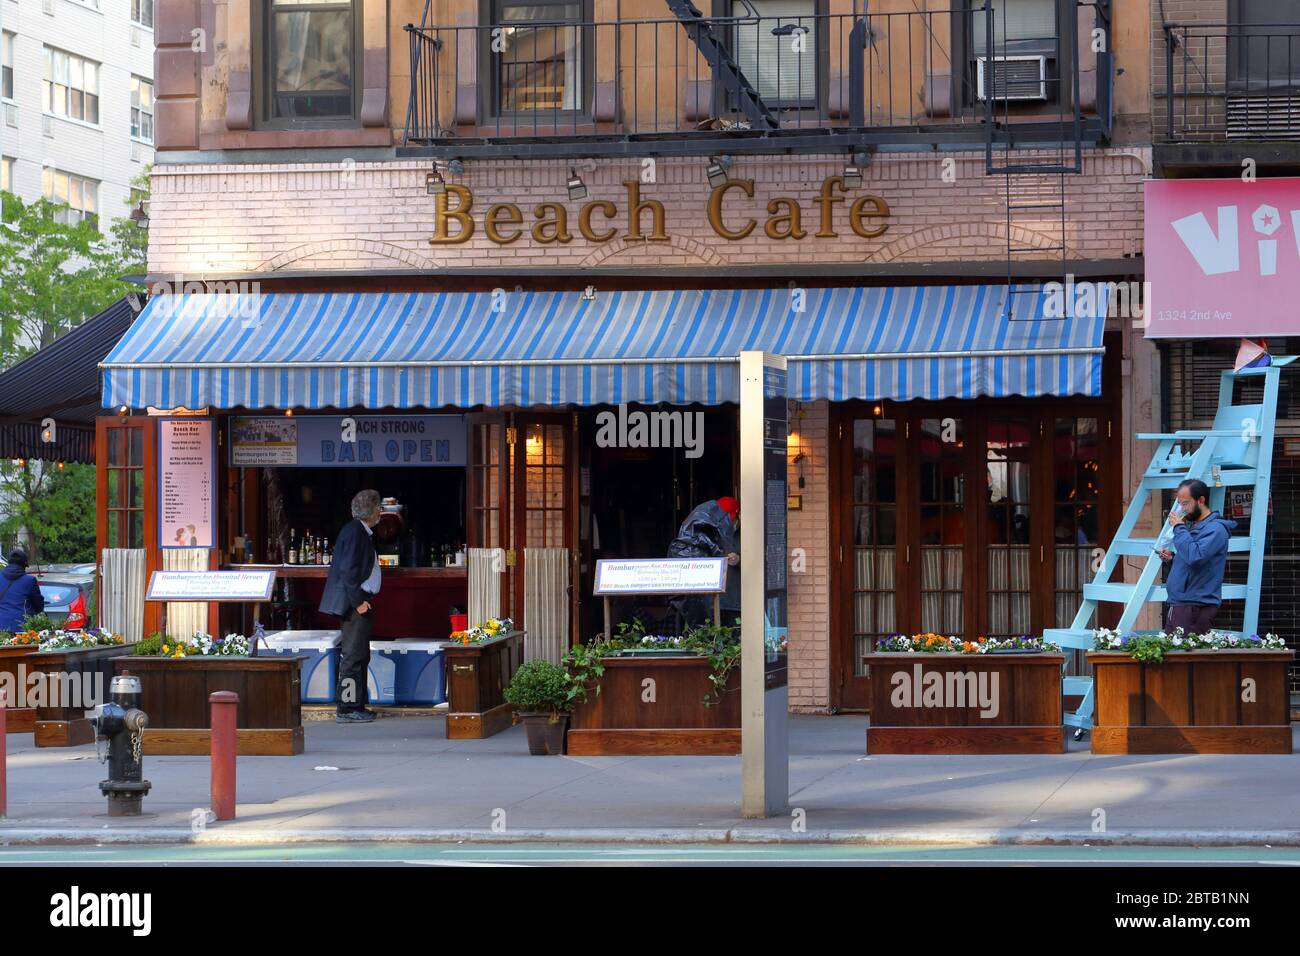 Beach Cafe, 1326 2. Avenue, New York, NYC Foto von einer Bar und einem Restaurant in der Upper East Side von Manhattan. Stockfoto